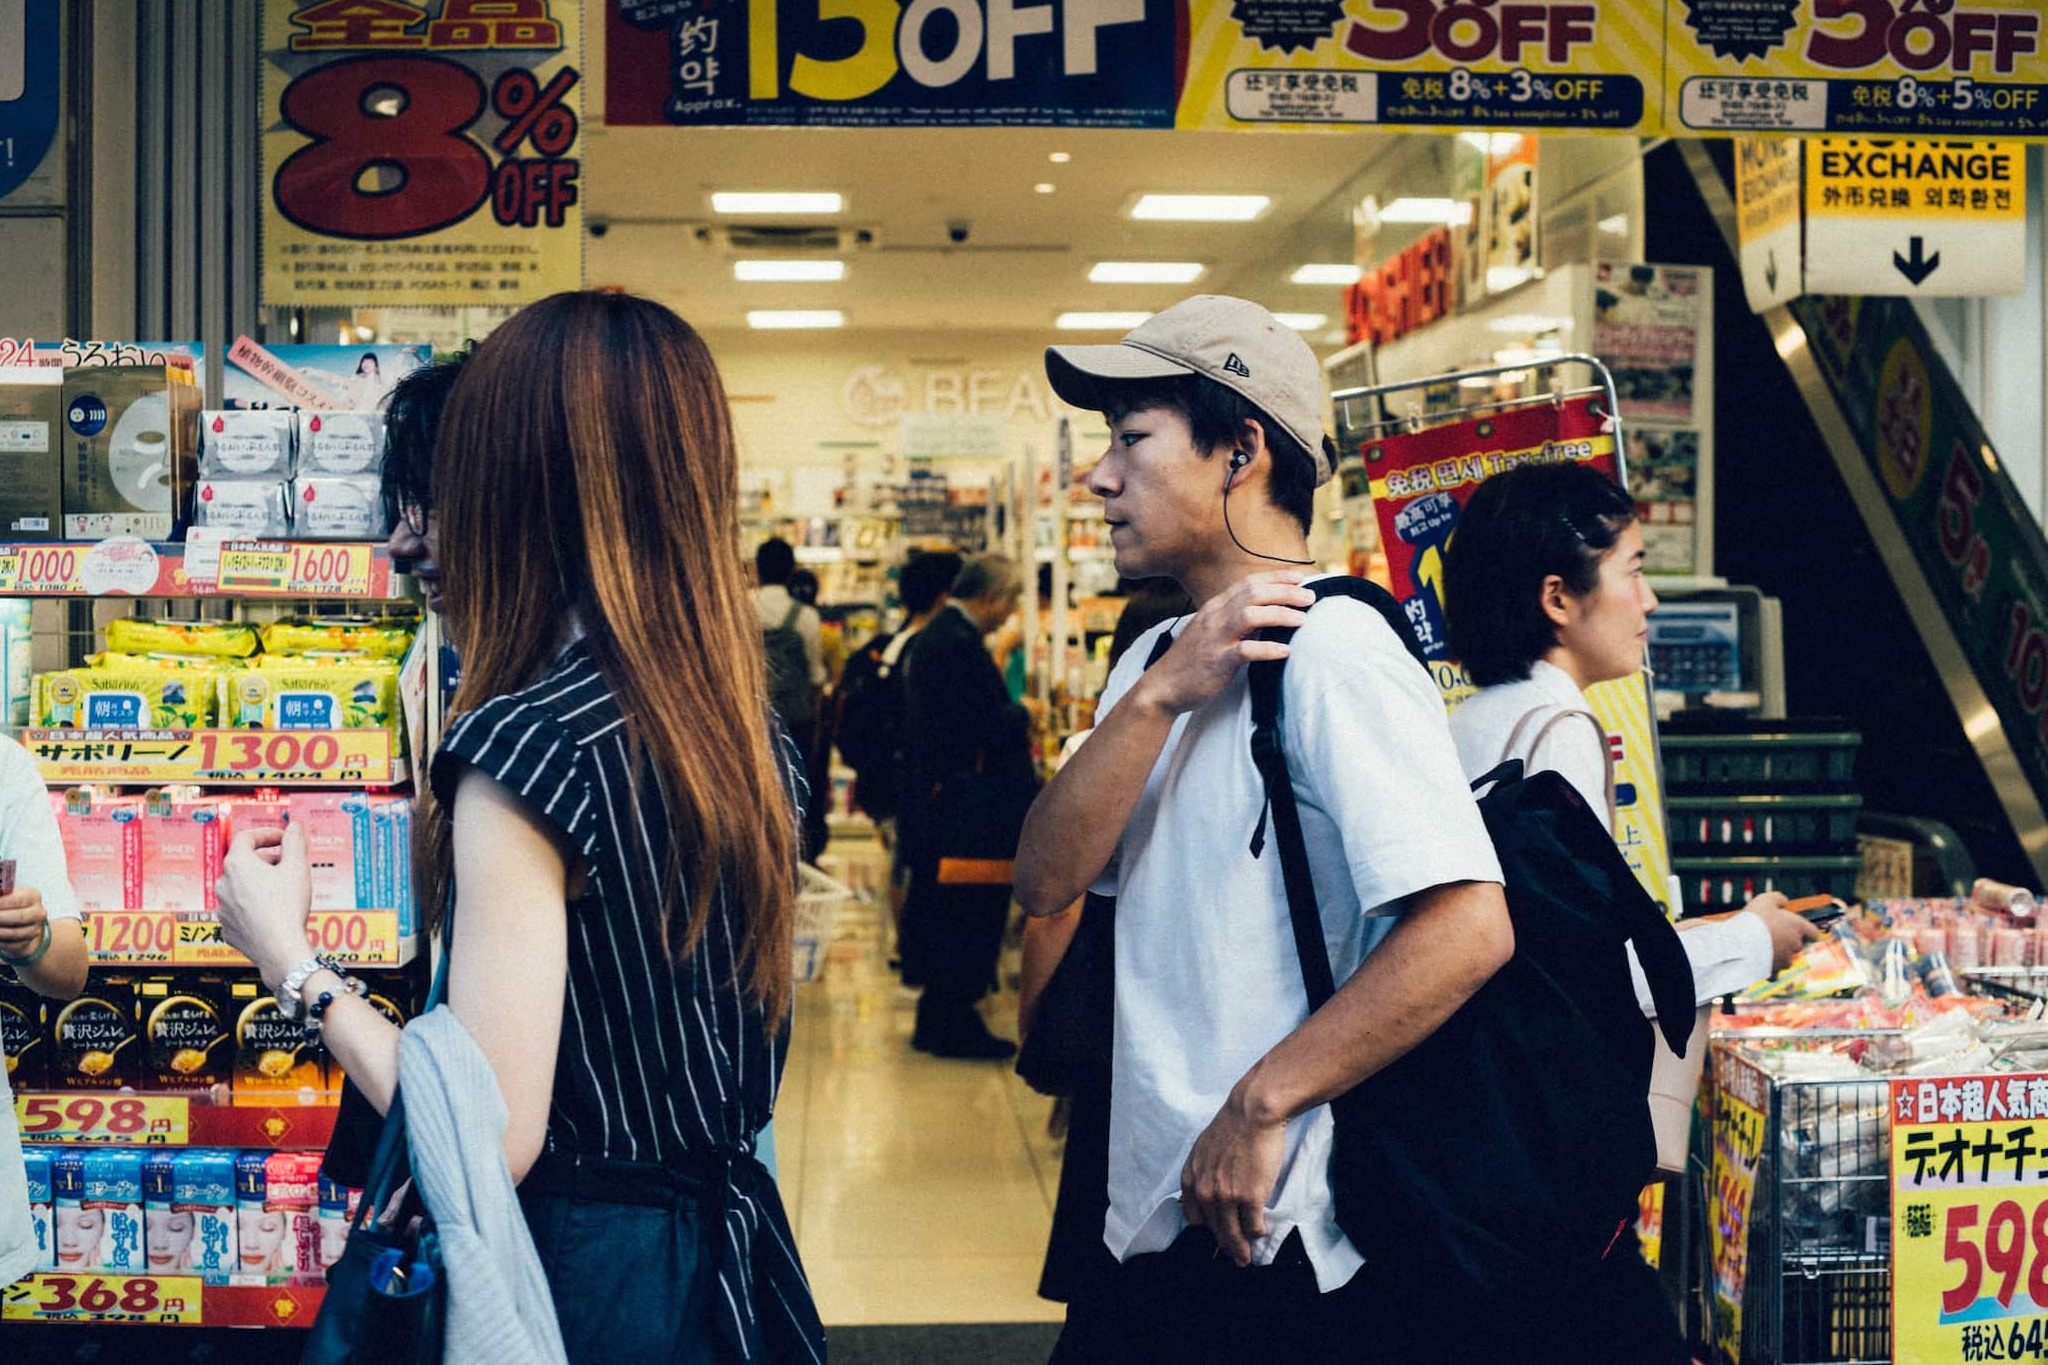 日本擬修改遊客退稅制度 以打擊境內商品轉售活動